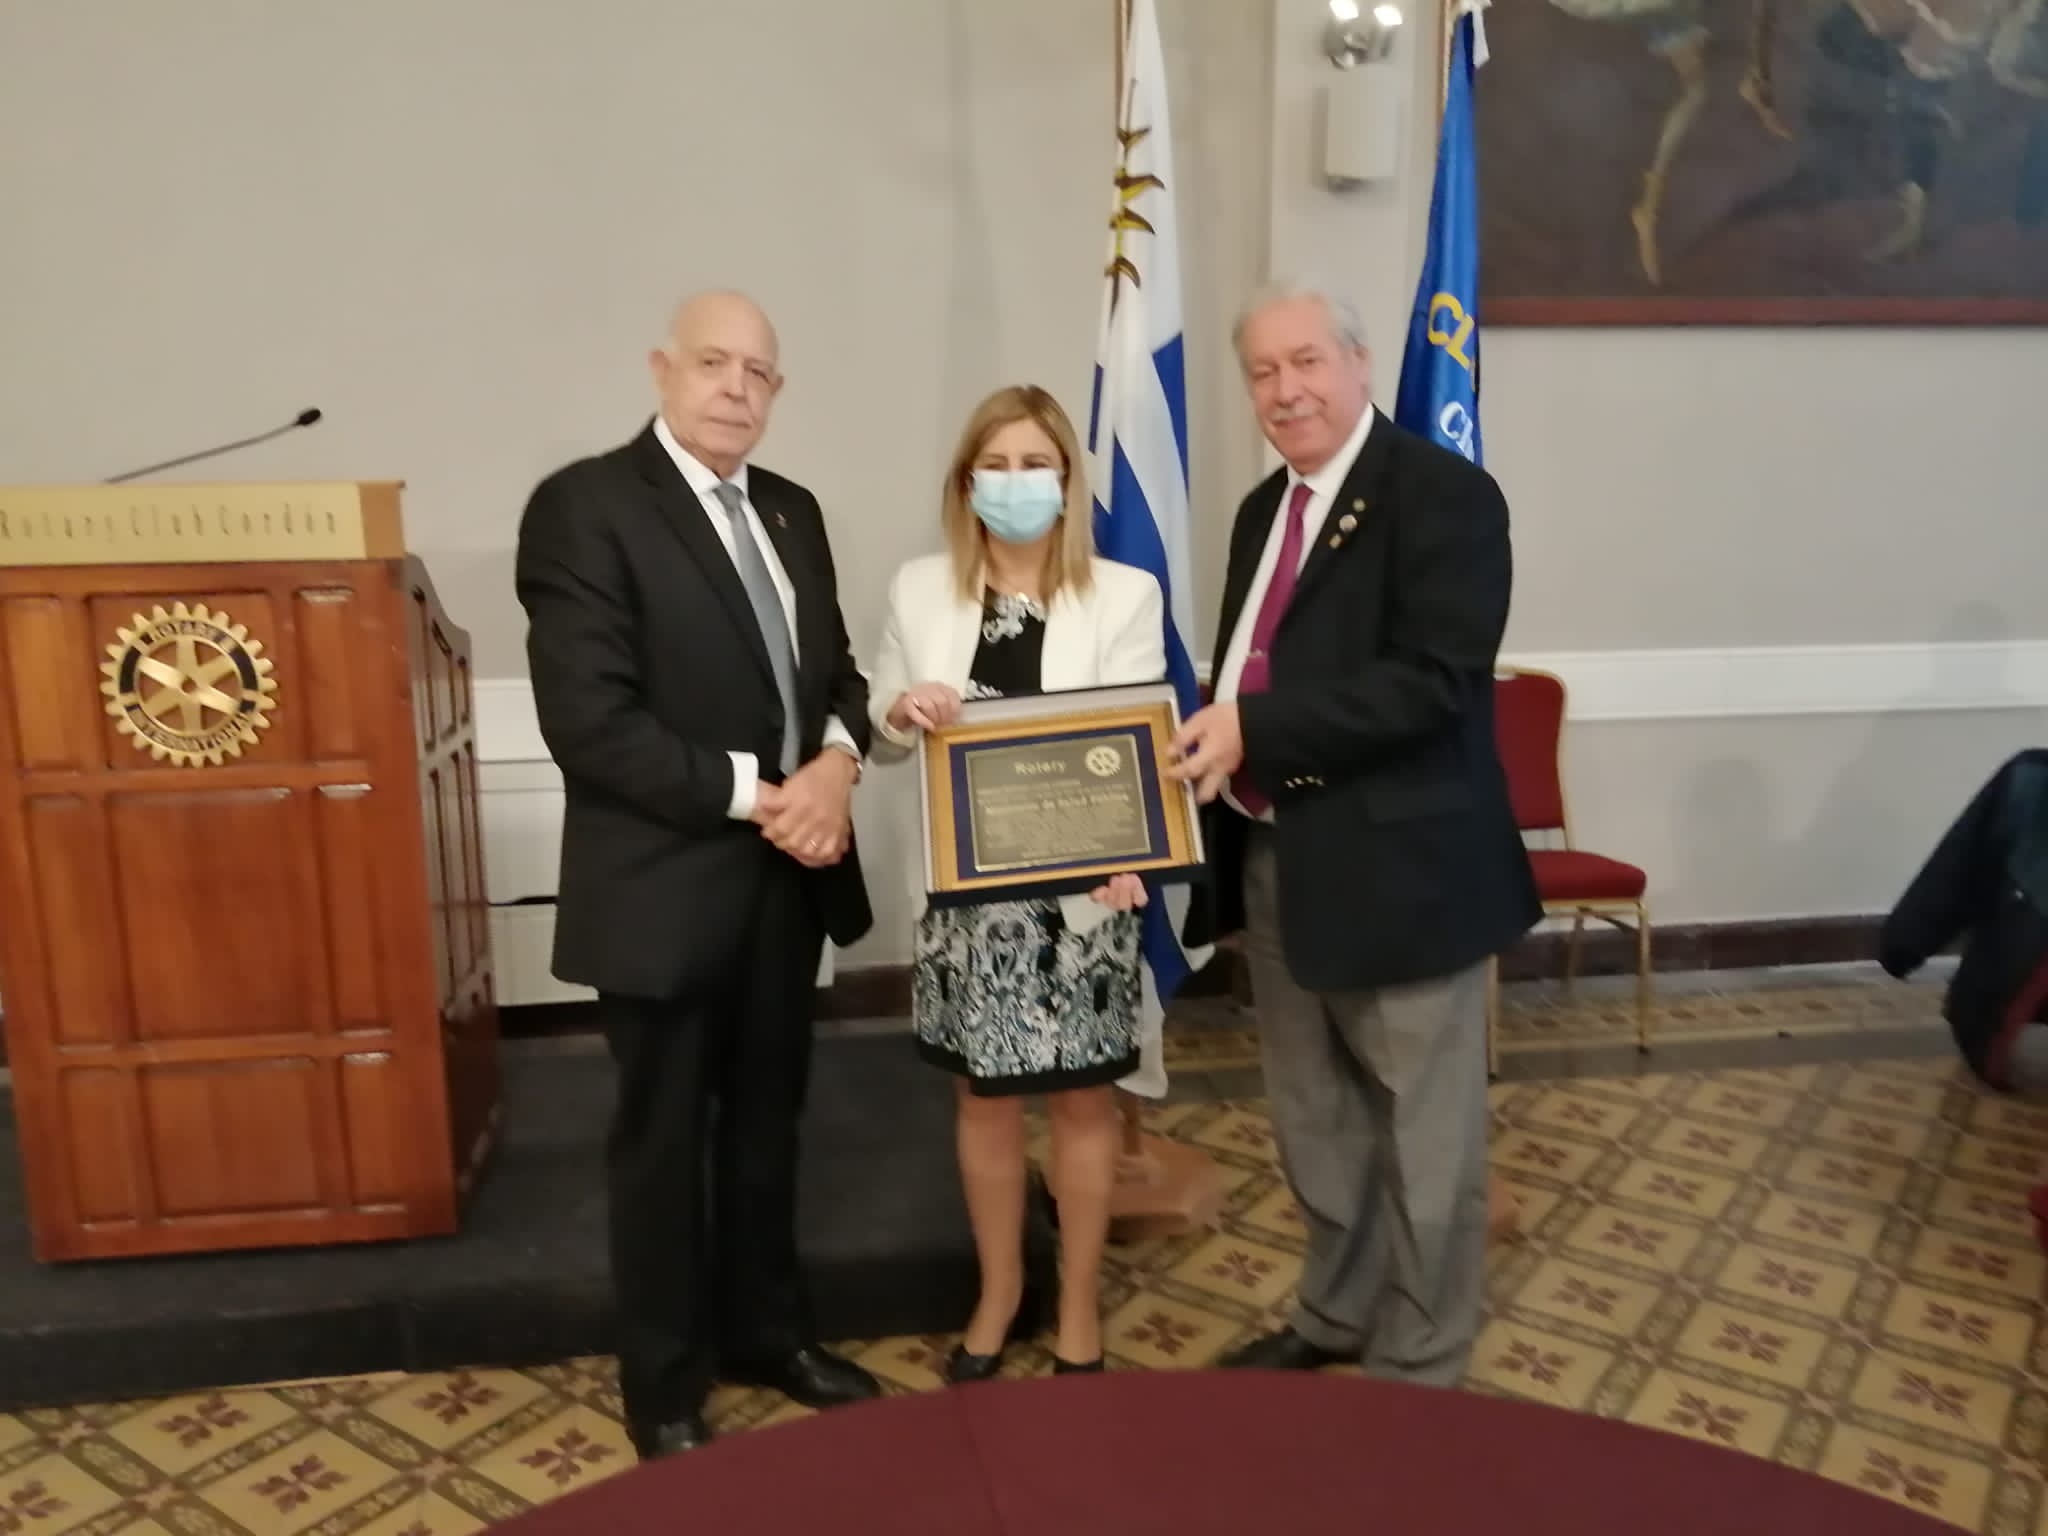 Entrega del Premio Rotary Club Cordon en su 55 Aniversario al MSP | Rotary  Club Cordón